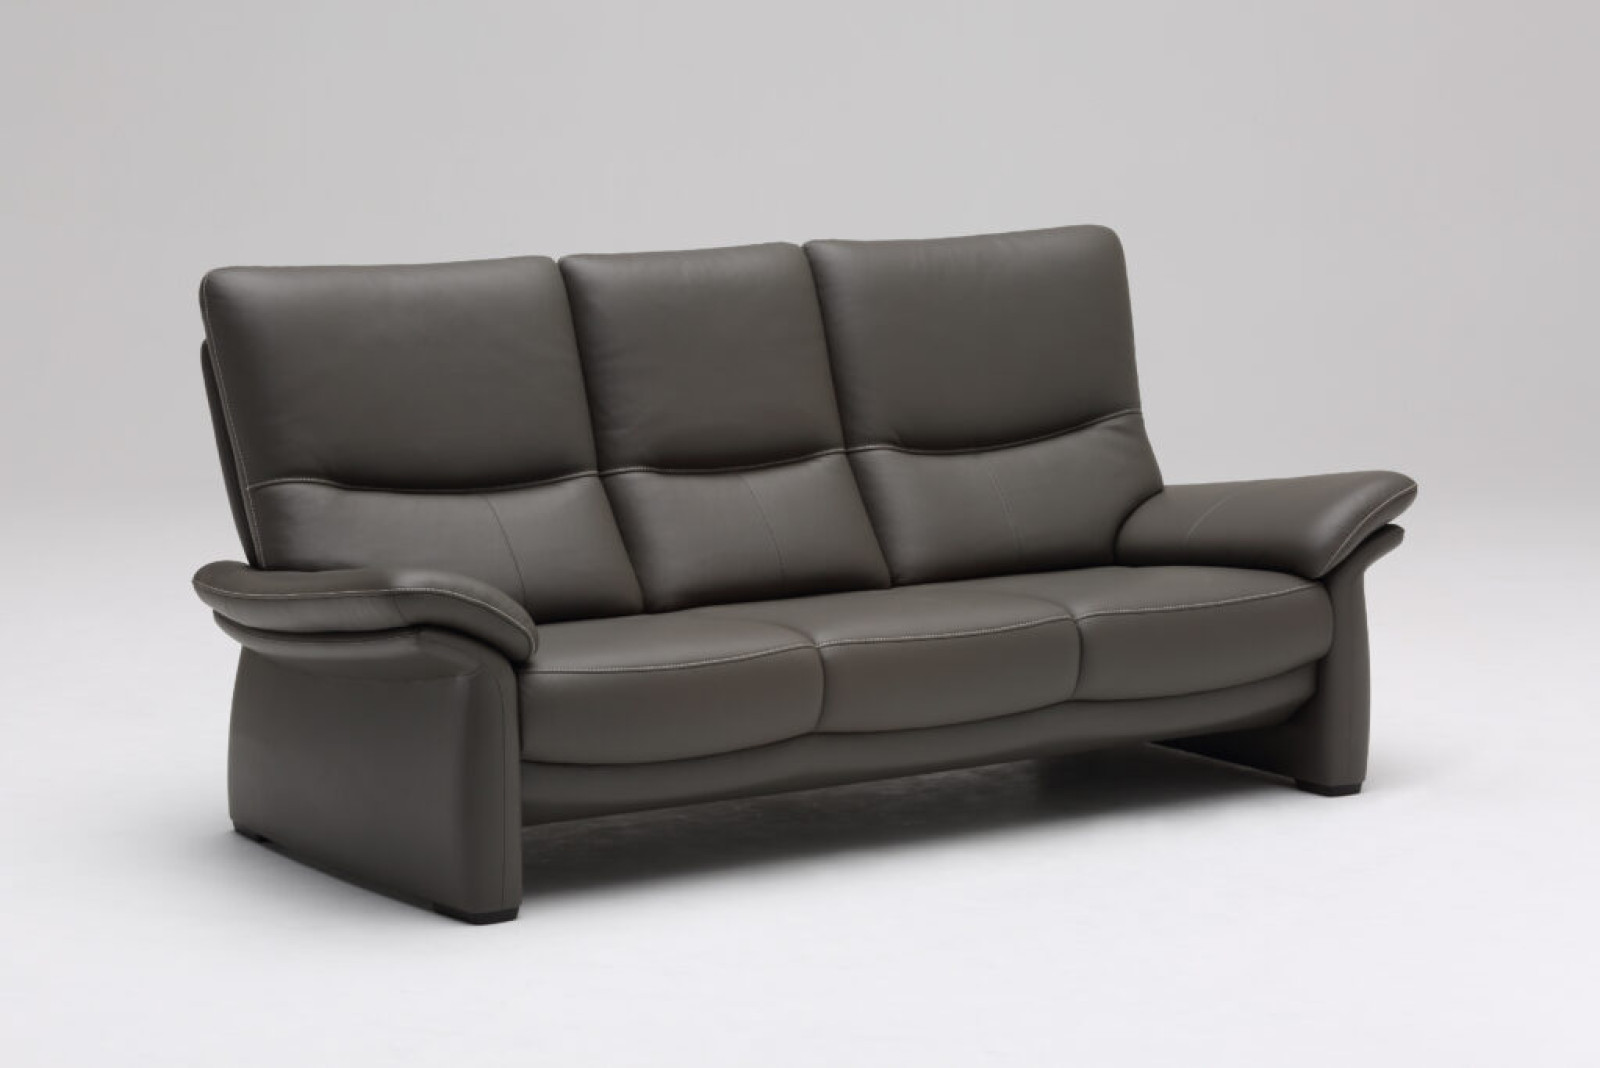 包み込まれるような座り心地のソファ／Z104モデル